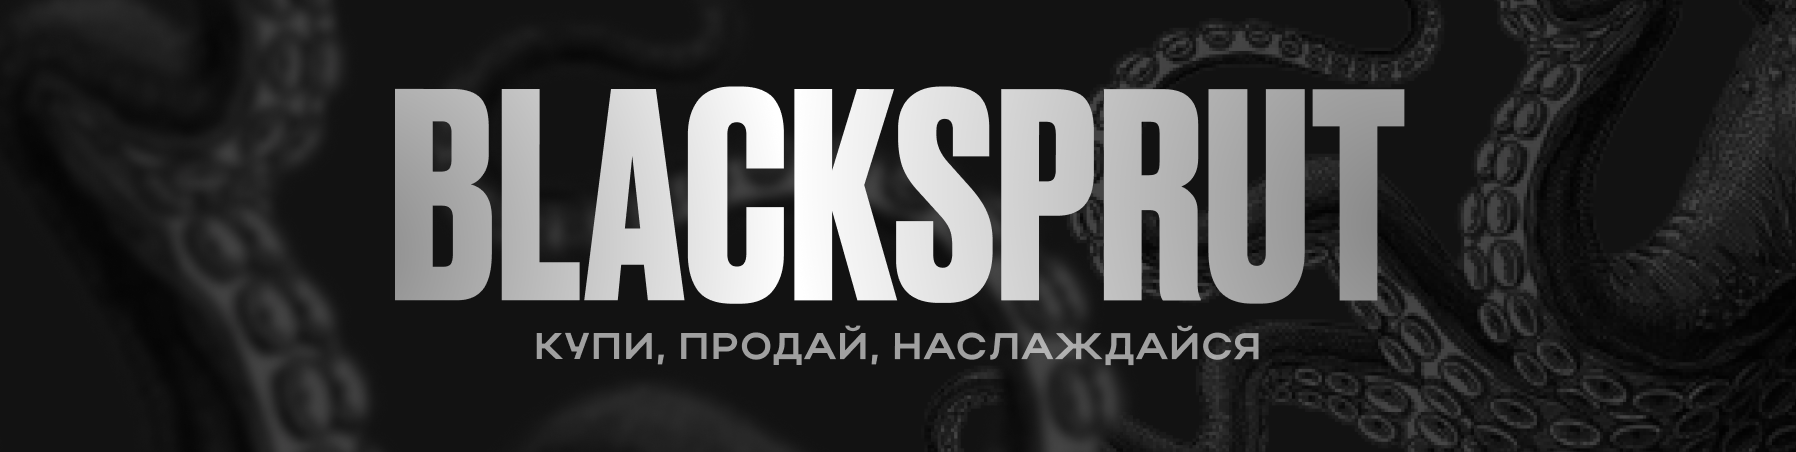 start blacksprut на русском скачать бесплатно даркнет